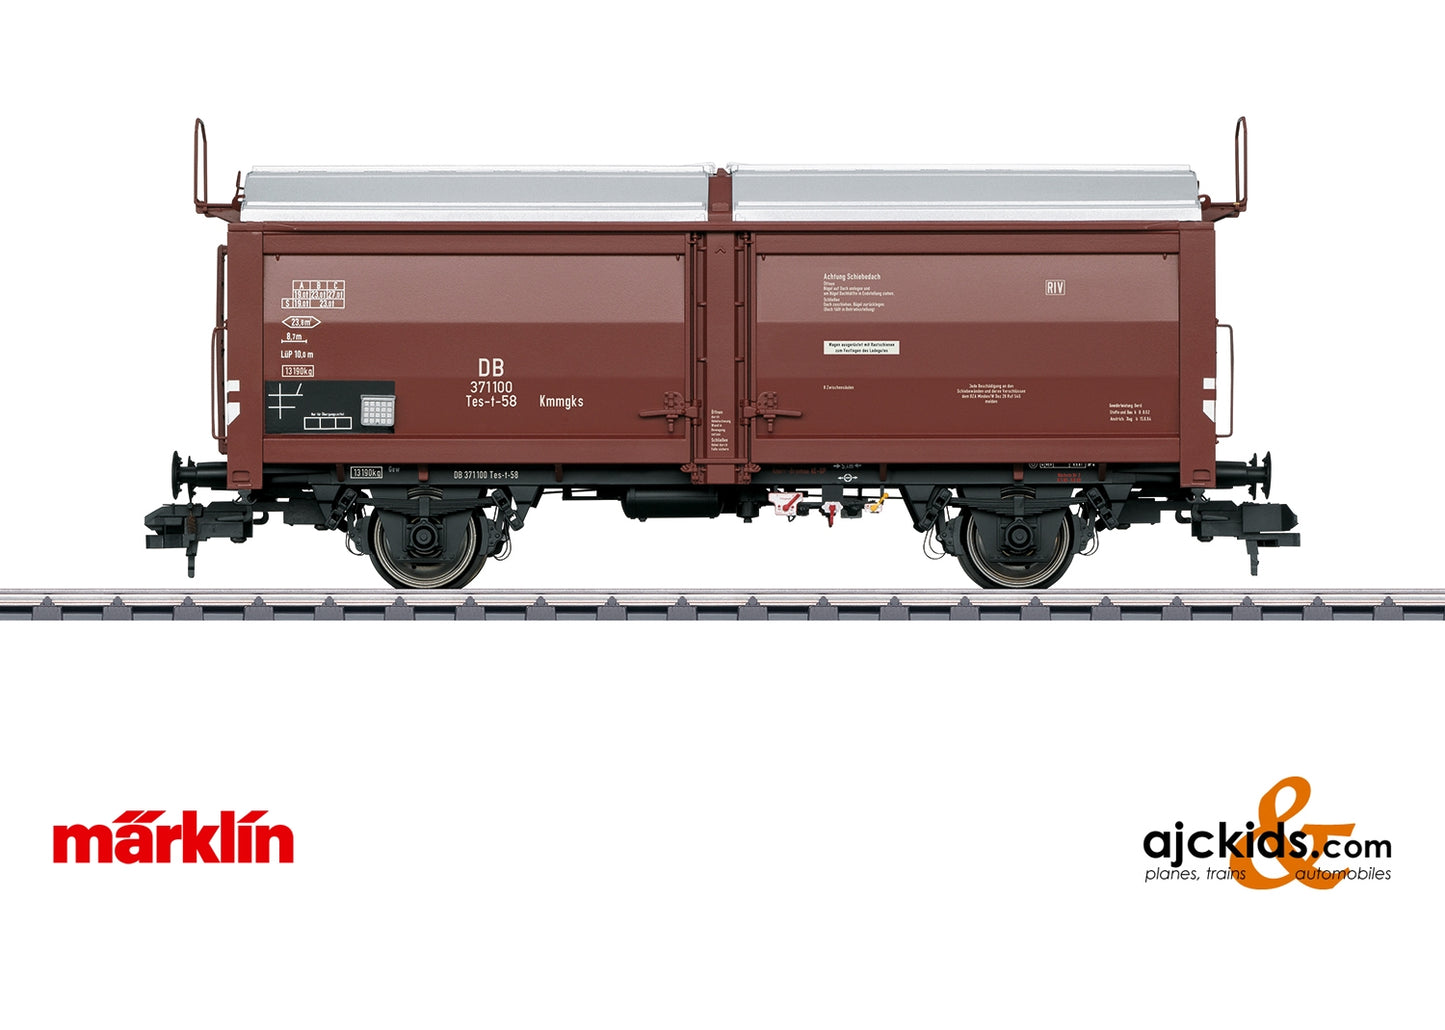 Marklin 58377 - Boxcar